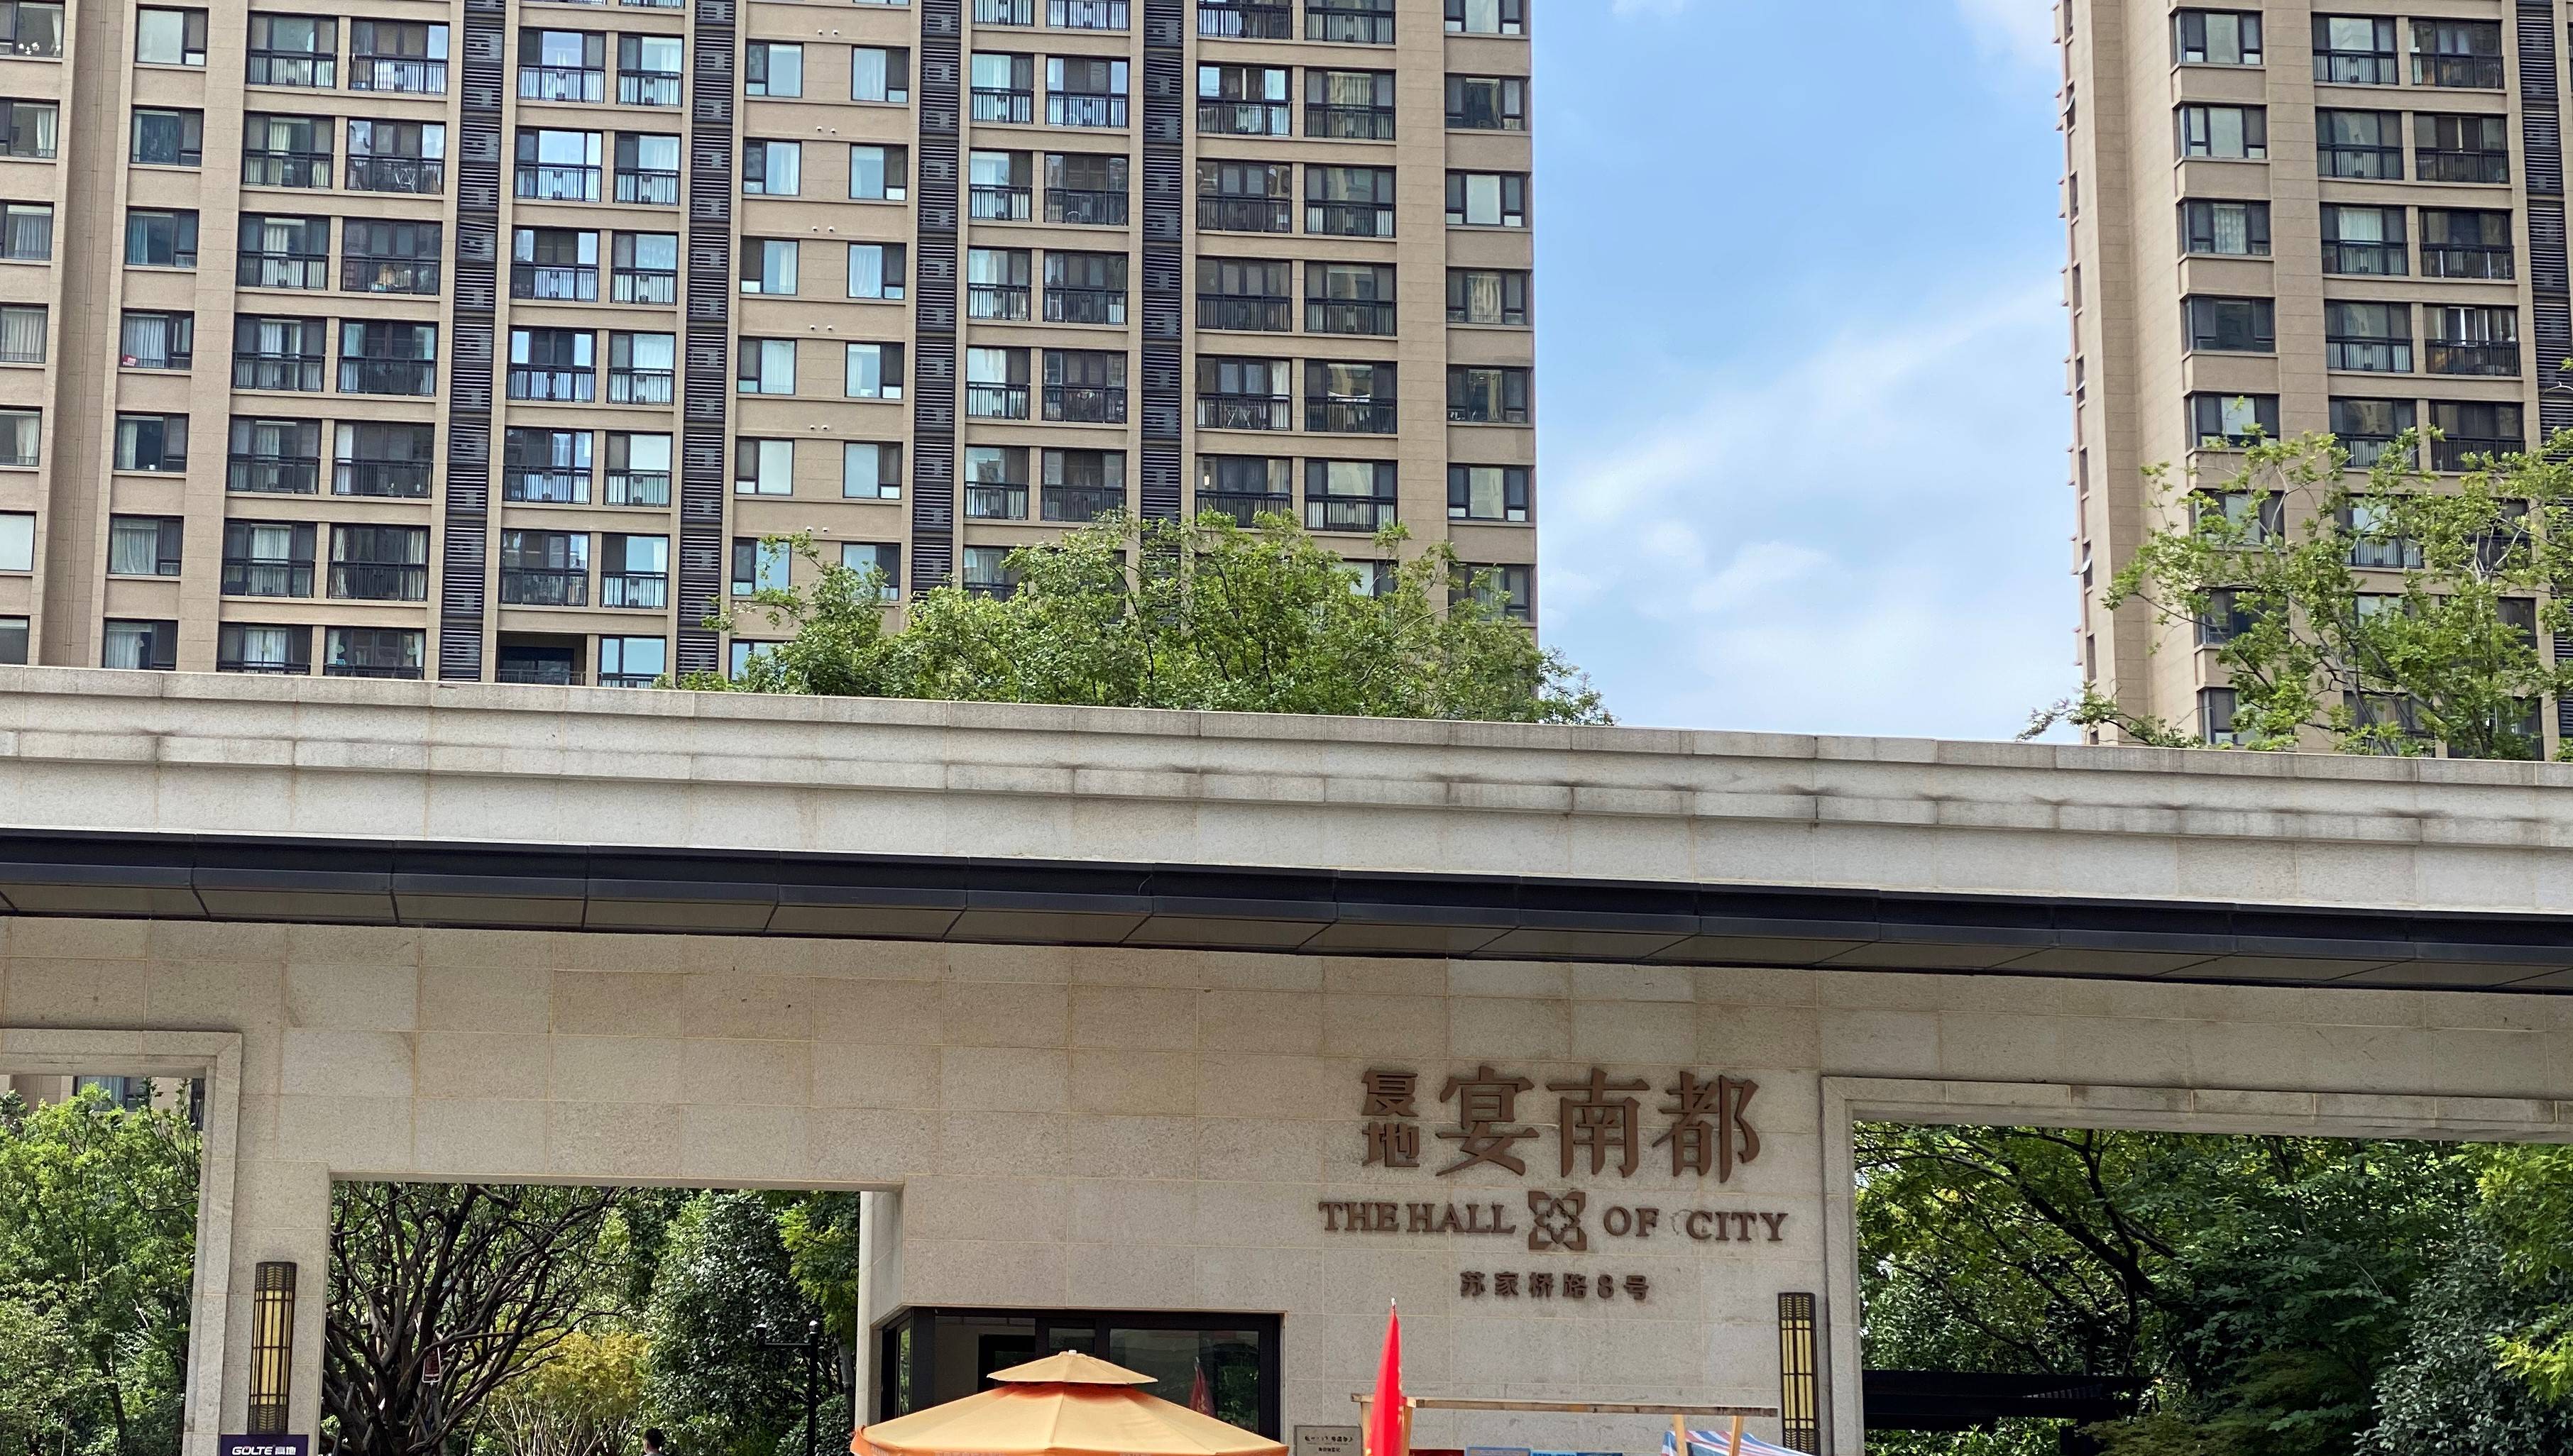 复地宴南都花园项目位于南京市秦淮区汇景北路以北,卡子门大街以东,总